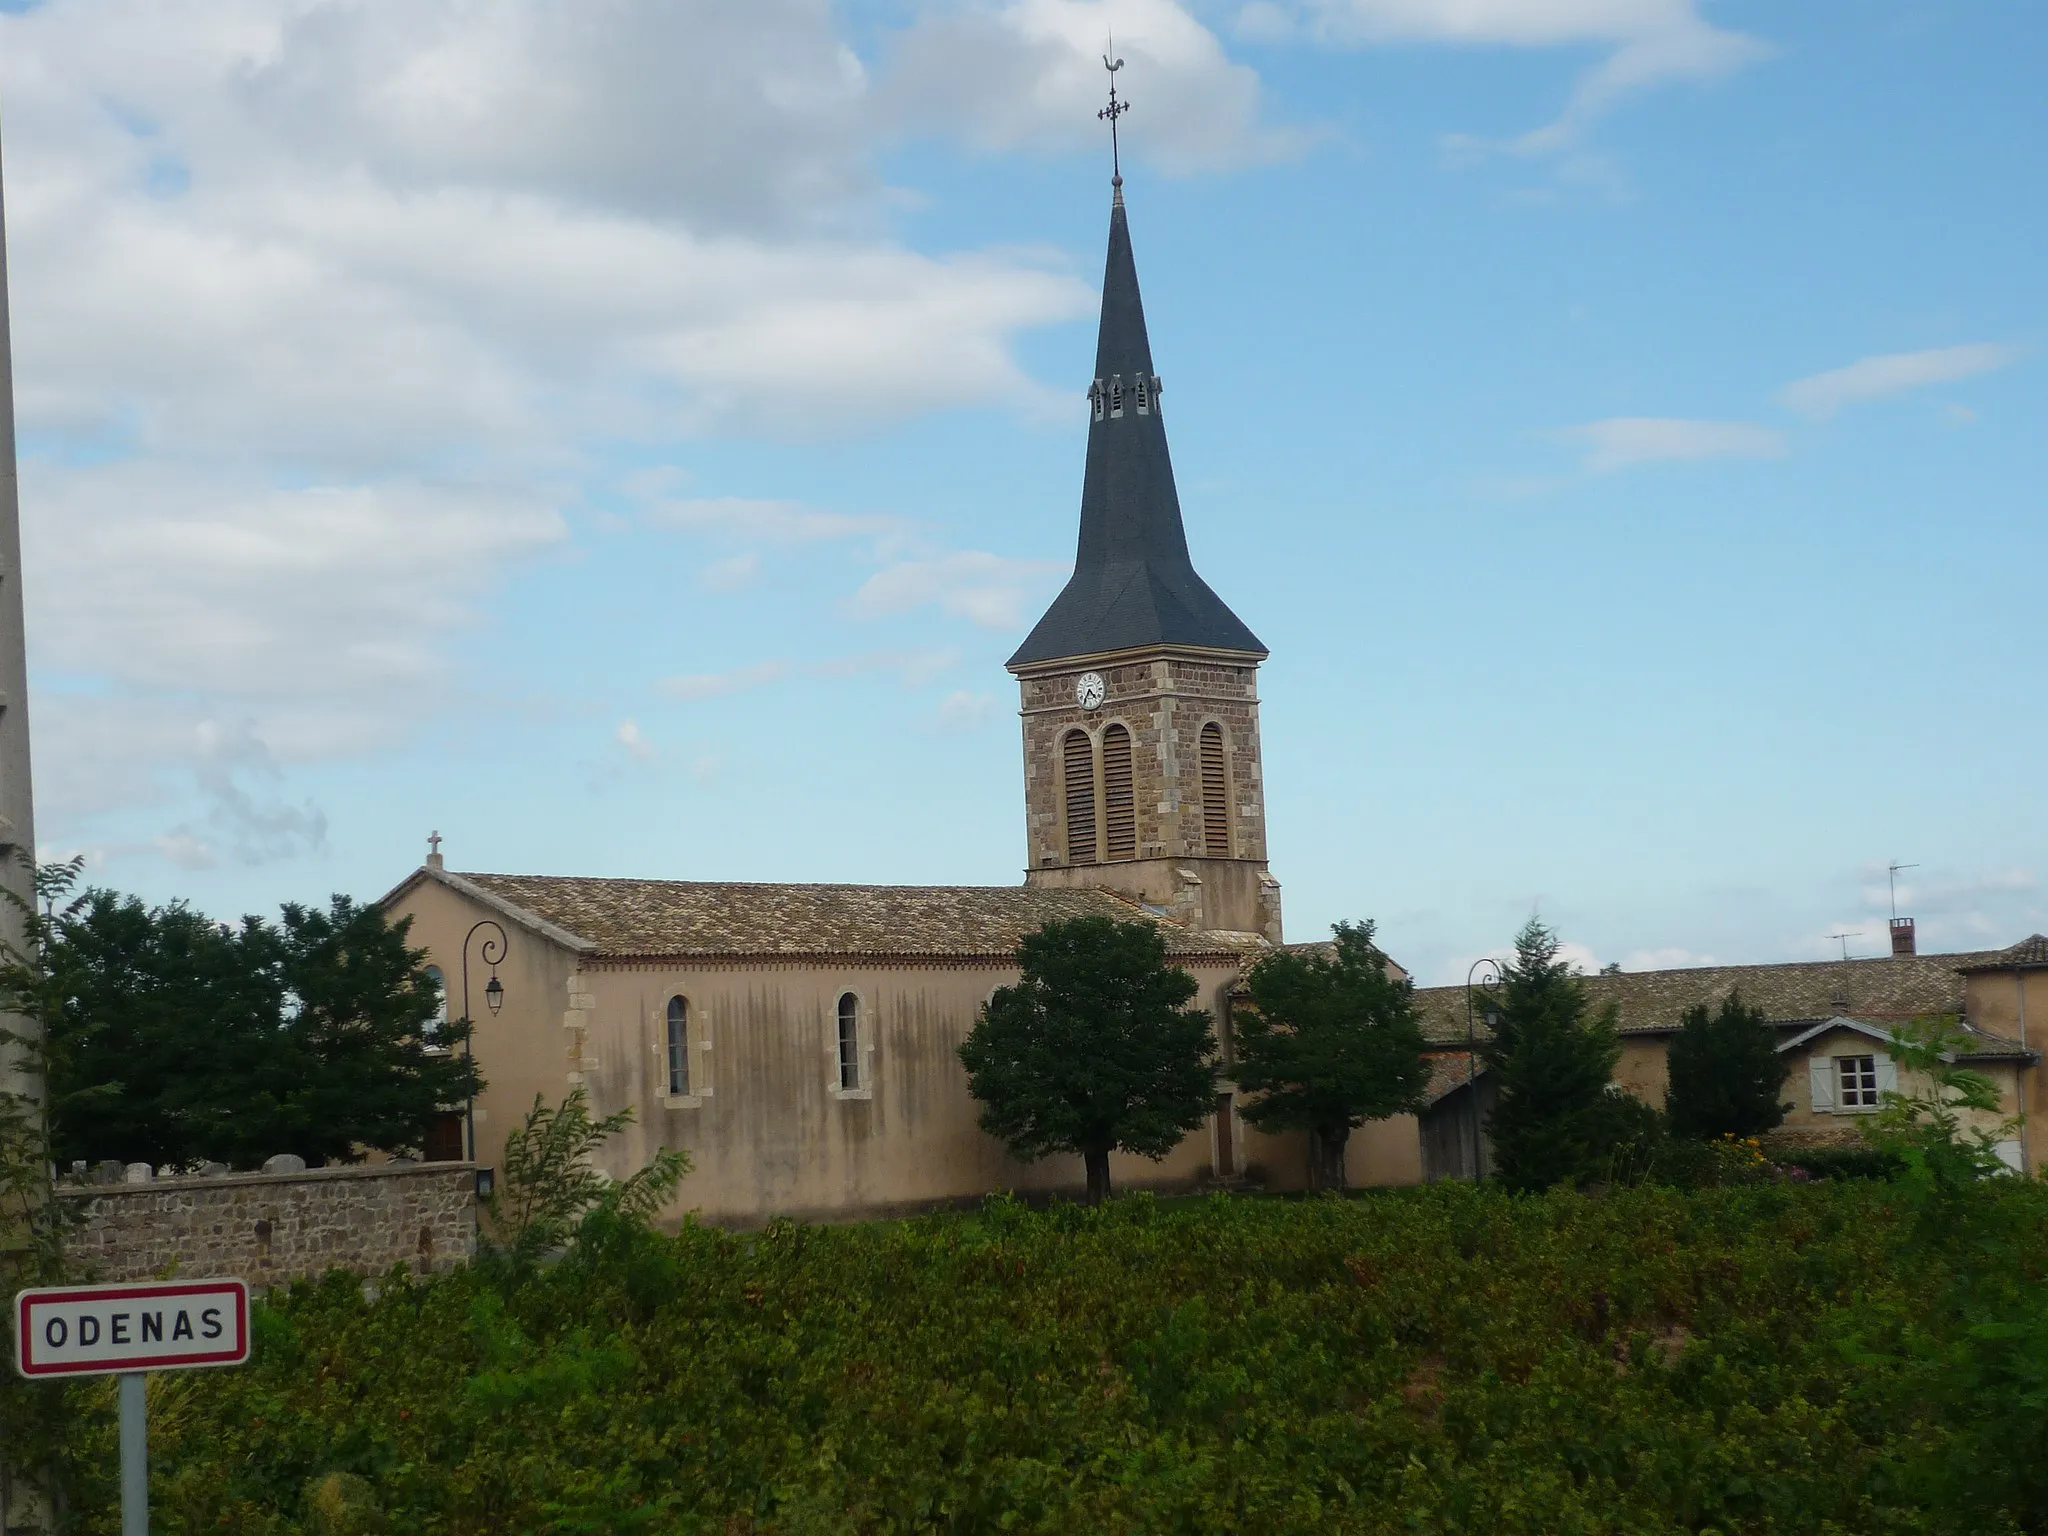 Photo showing: Église de la commune d'Odenas dans le département du Rhône